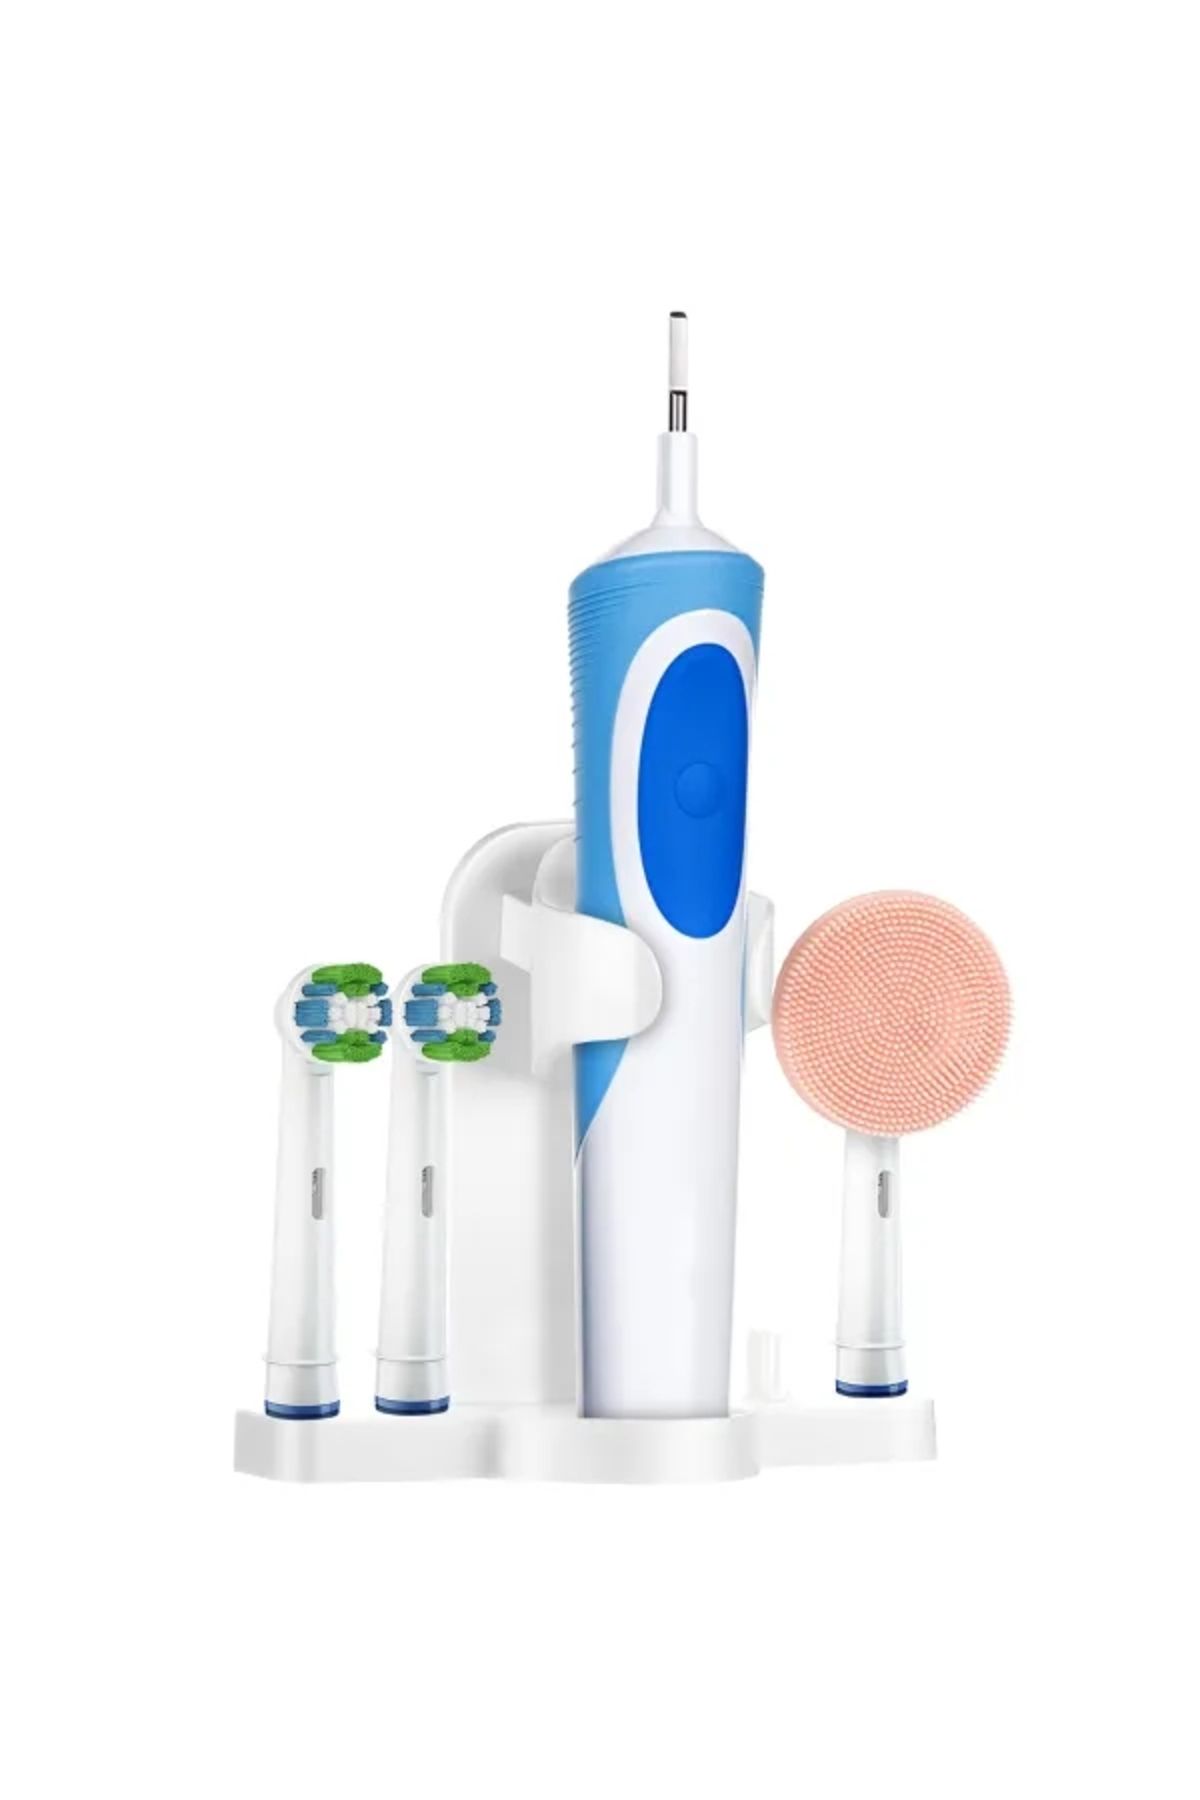 LOVYCO Oral-b Şarjlı Ve Pilli Diş Fırçaları Için Banyo Düzenleyici Duvar Standı